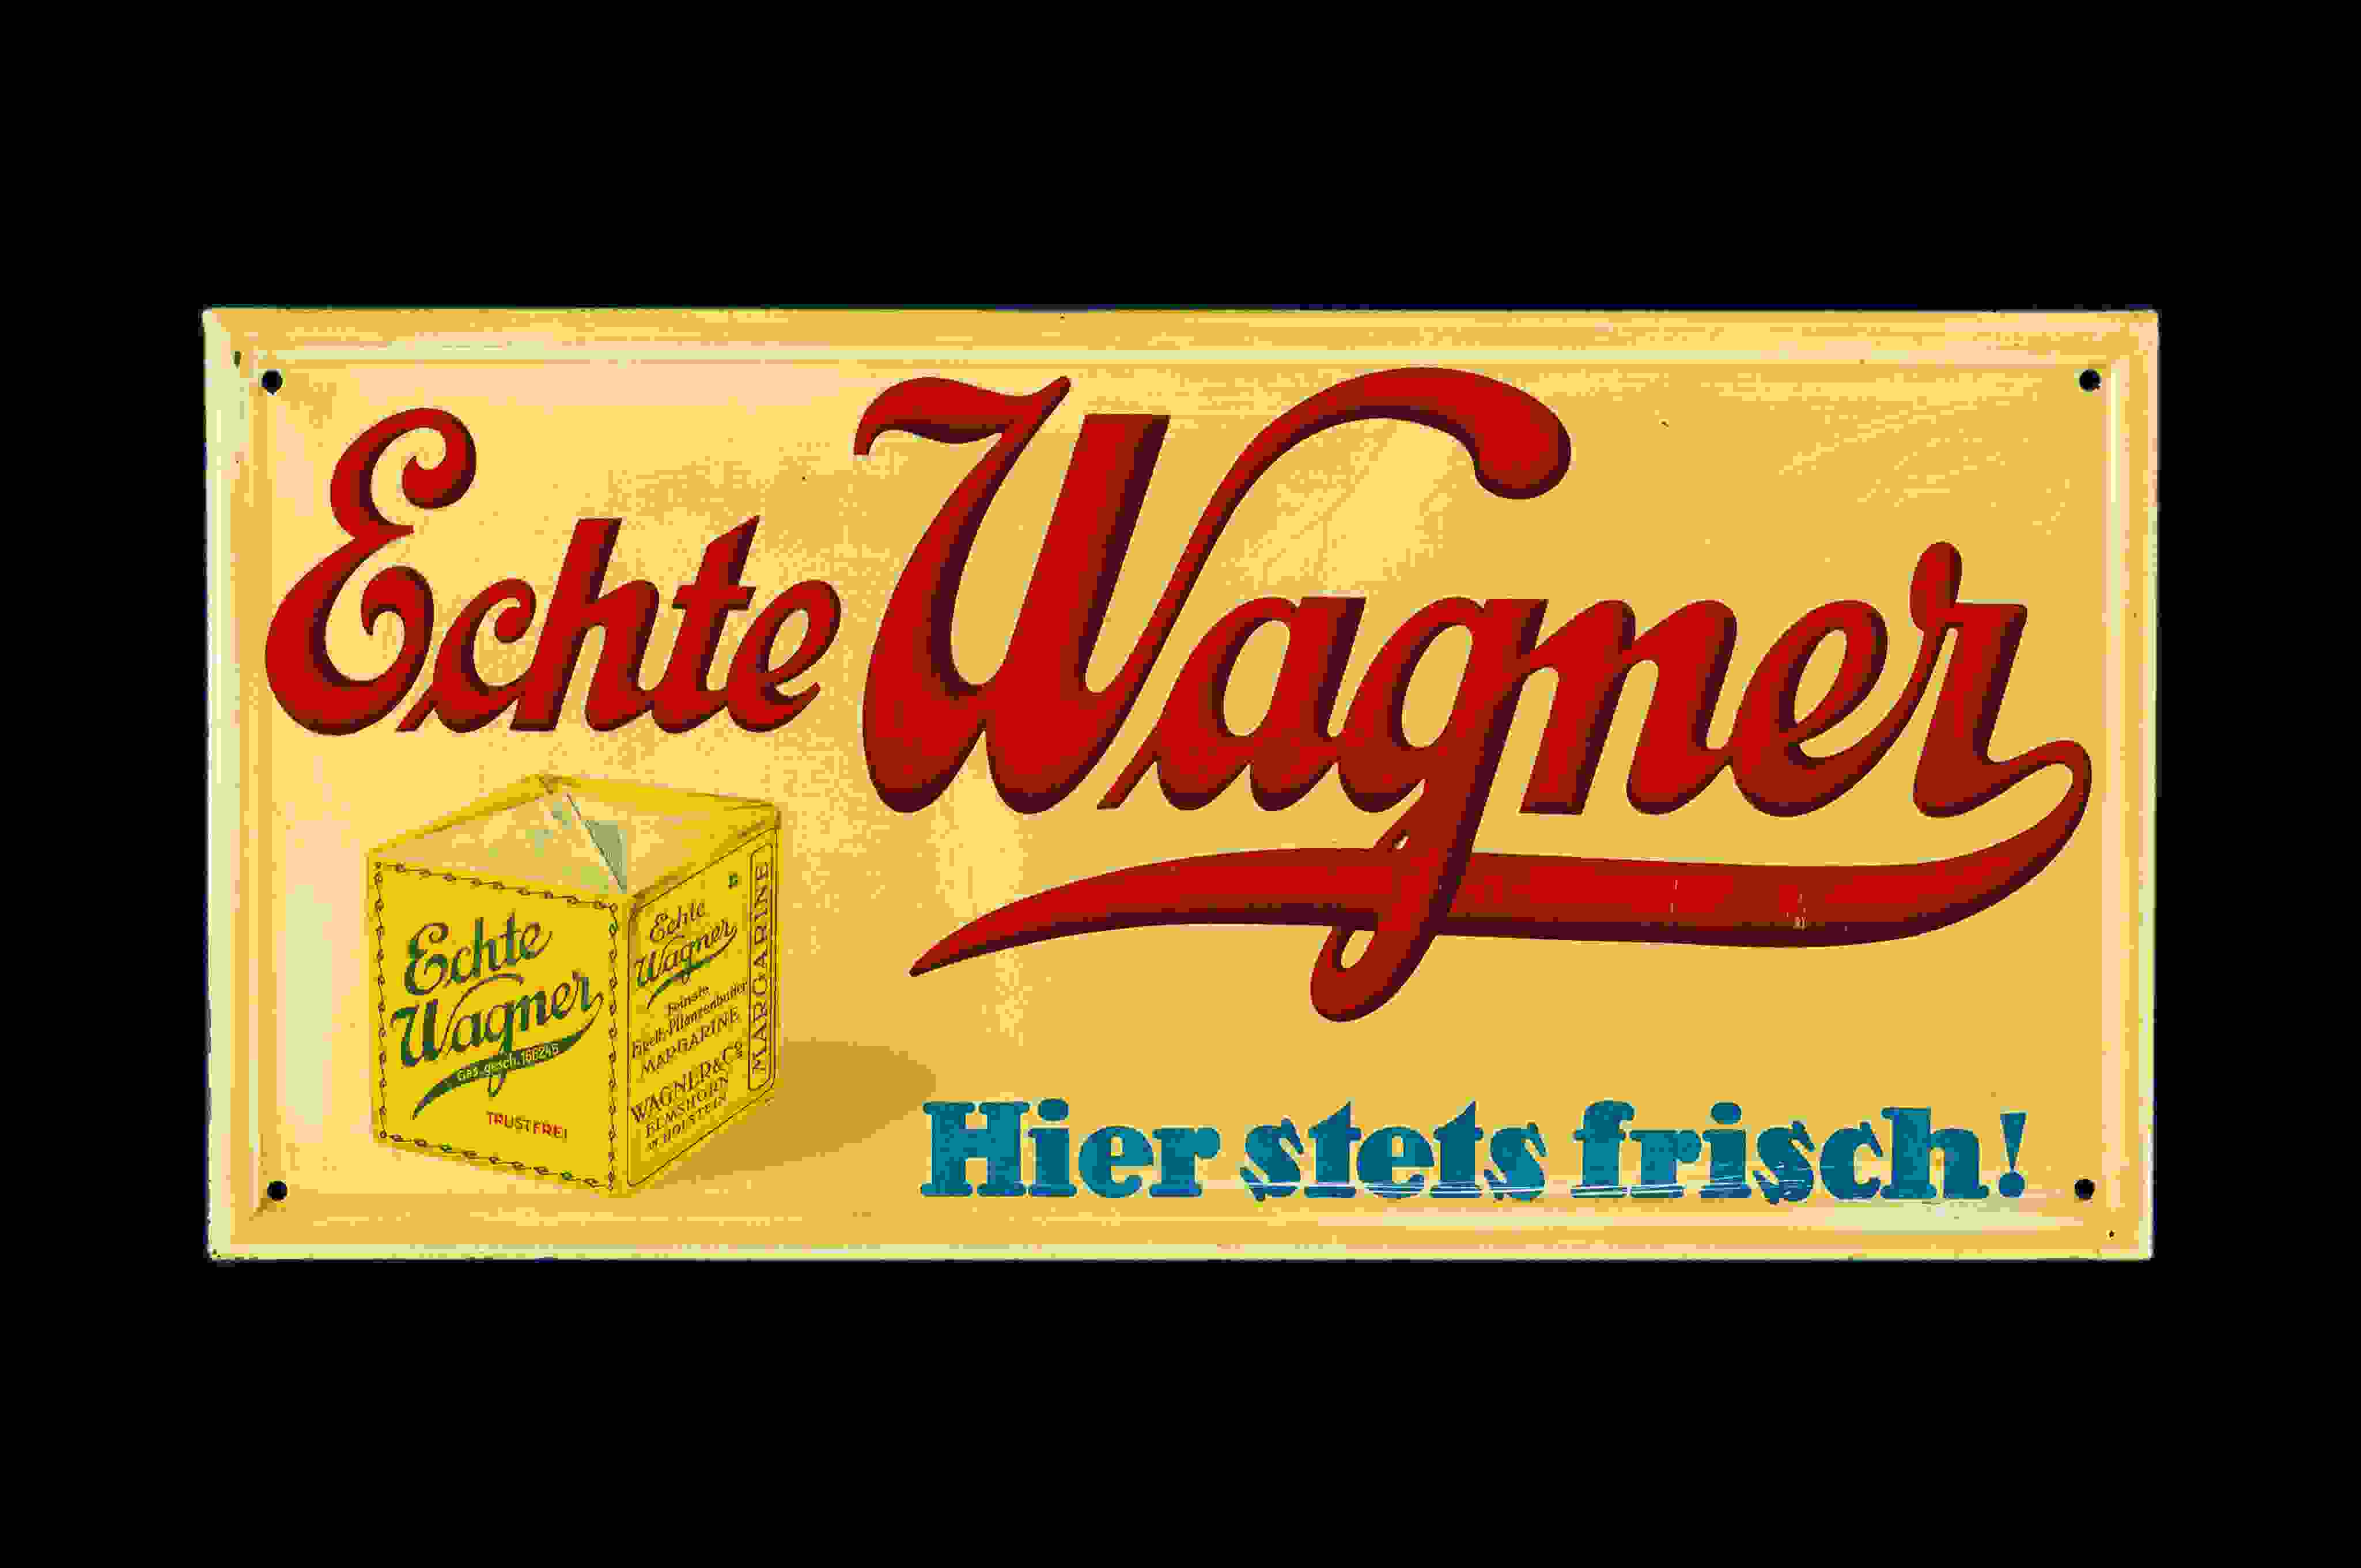 Echte Wagner Margarine 